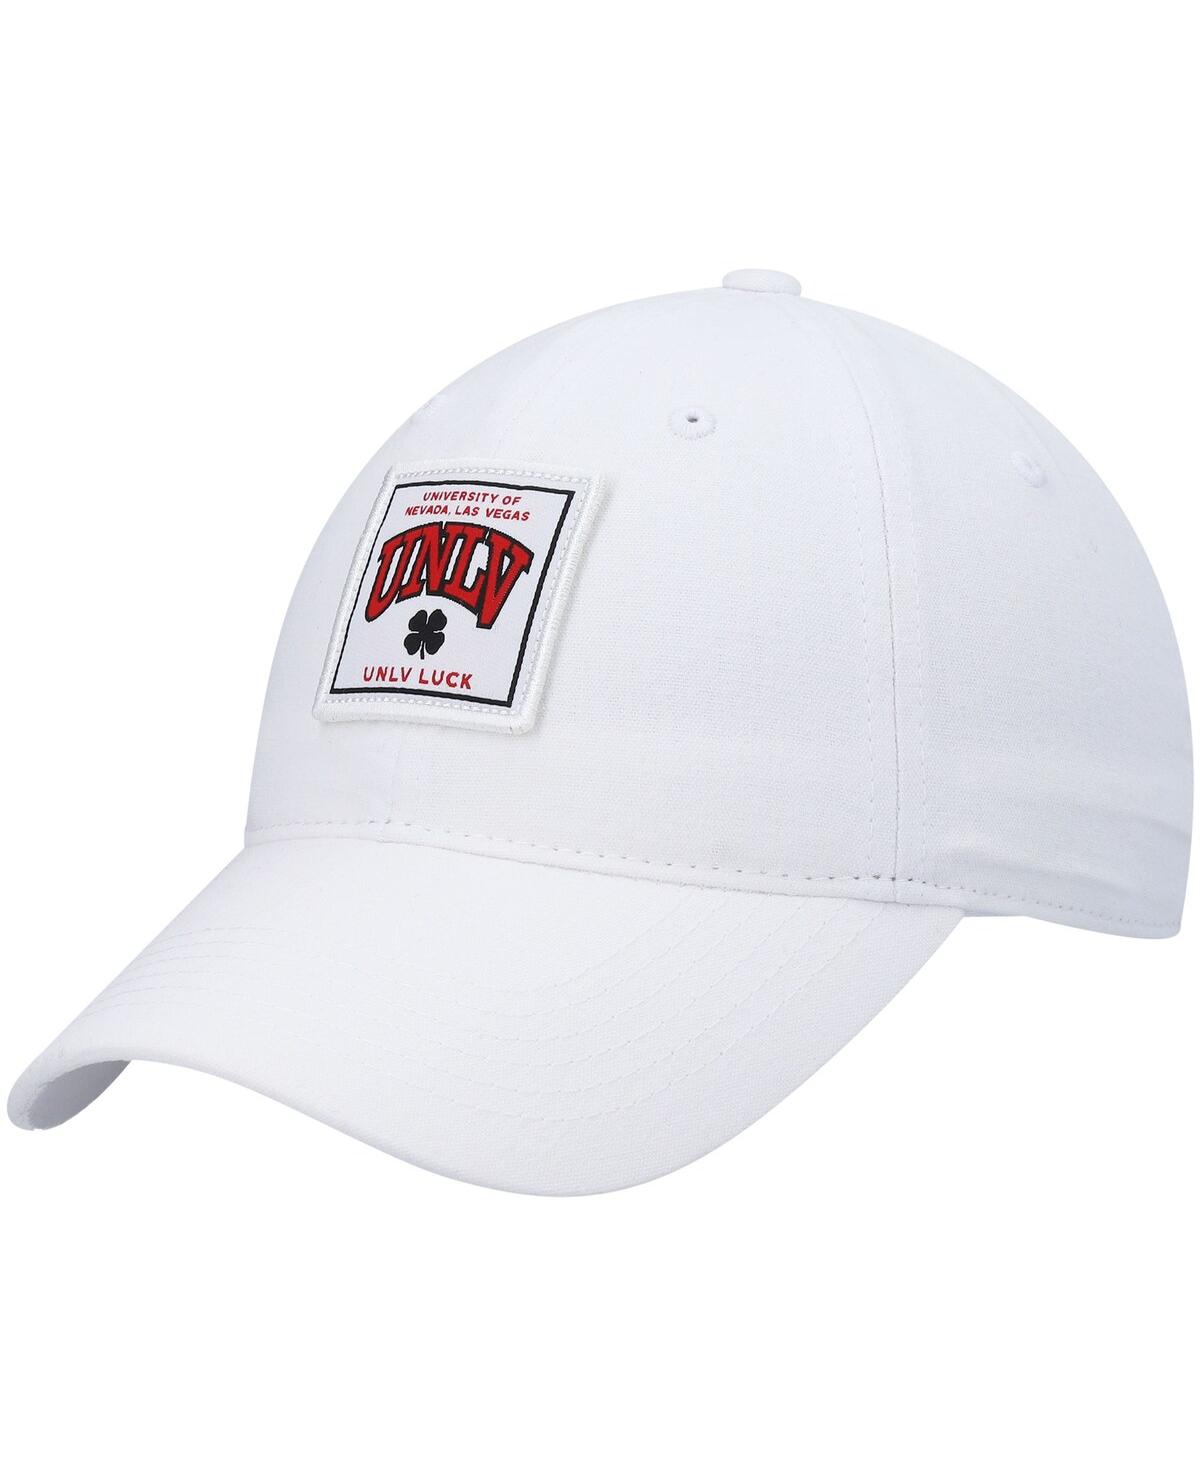 Shop Black Clover Men's White Unlv Rebels Dream Adjustable Hat